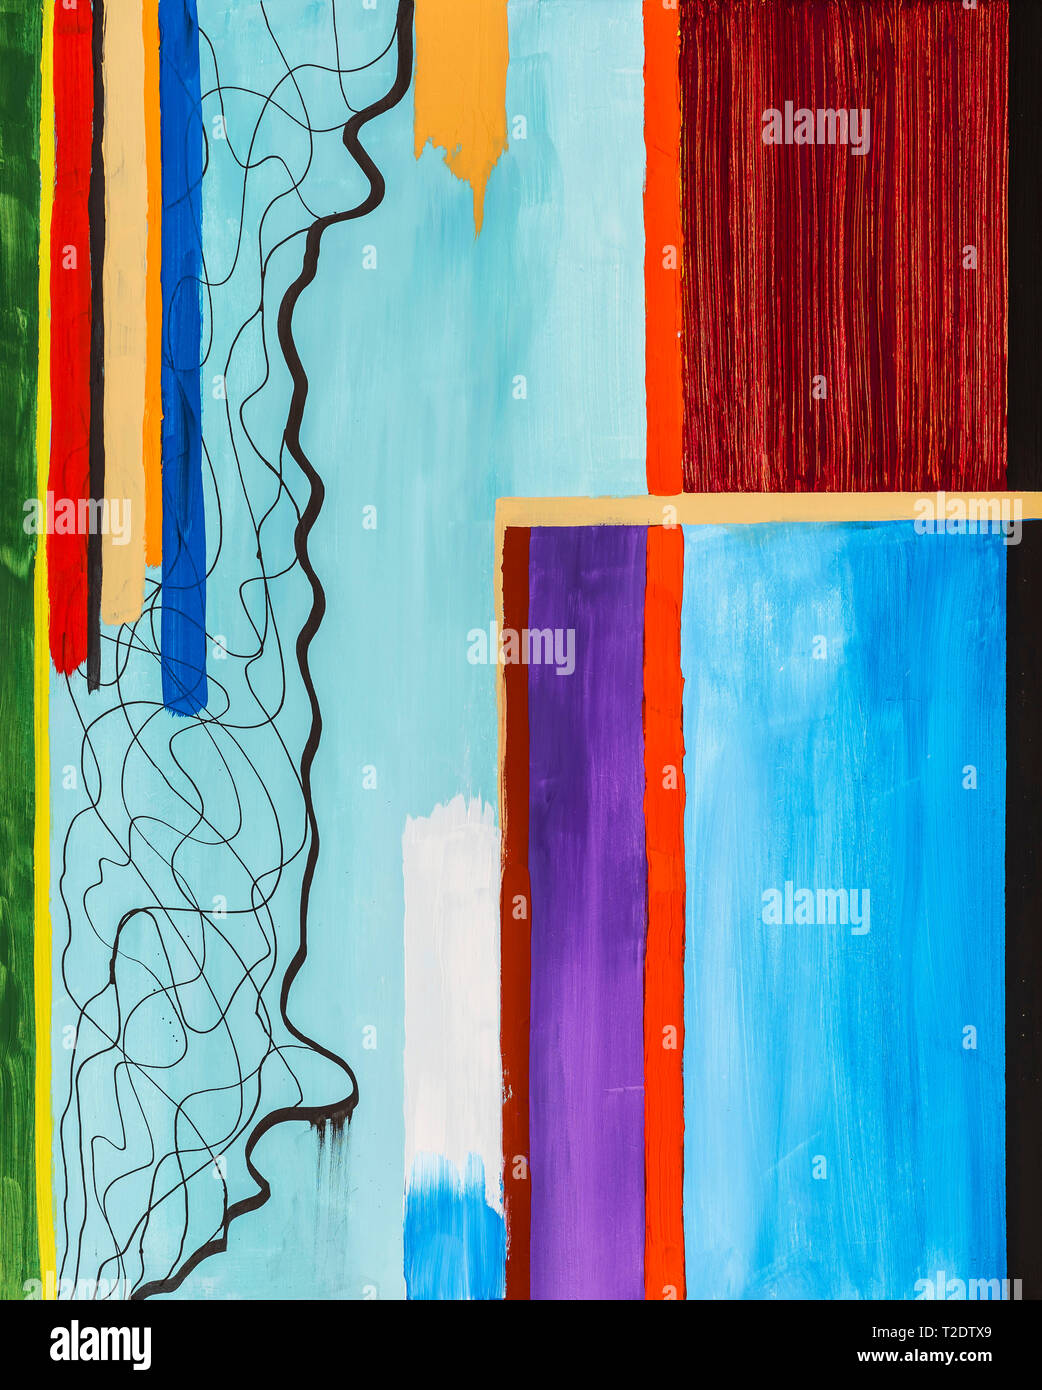 Spass Zusammensetzung Farbenfrohe Malerei Moderne Abstraktion Grafik Design Kunst In Acryl Malen Gerade Und Gekrummte Linien Stockfotografie Alamy